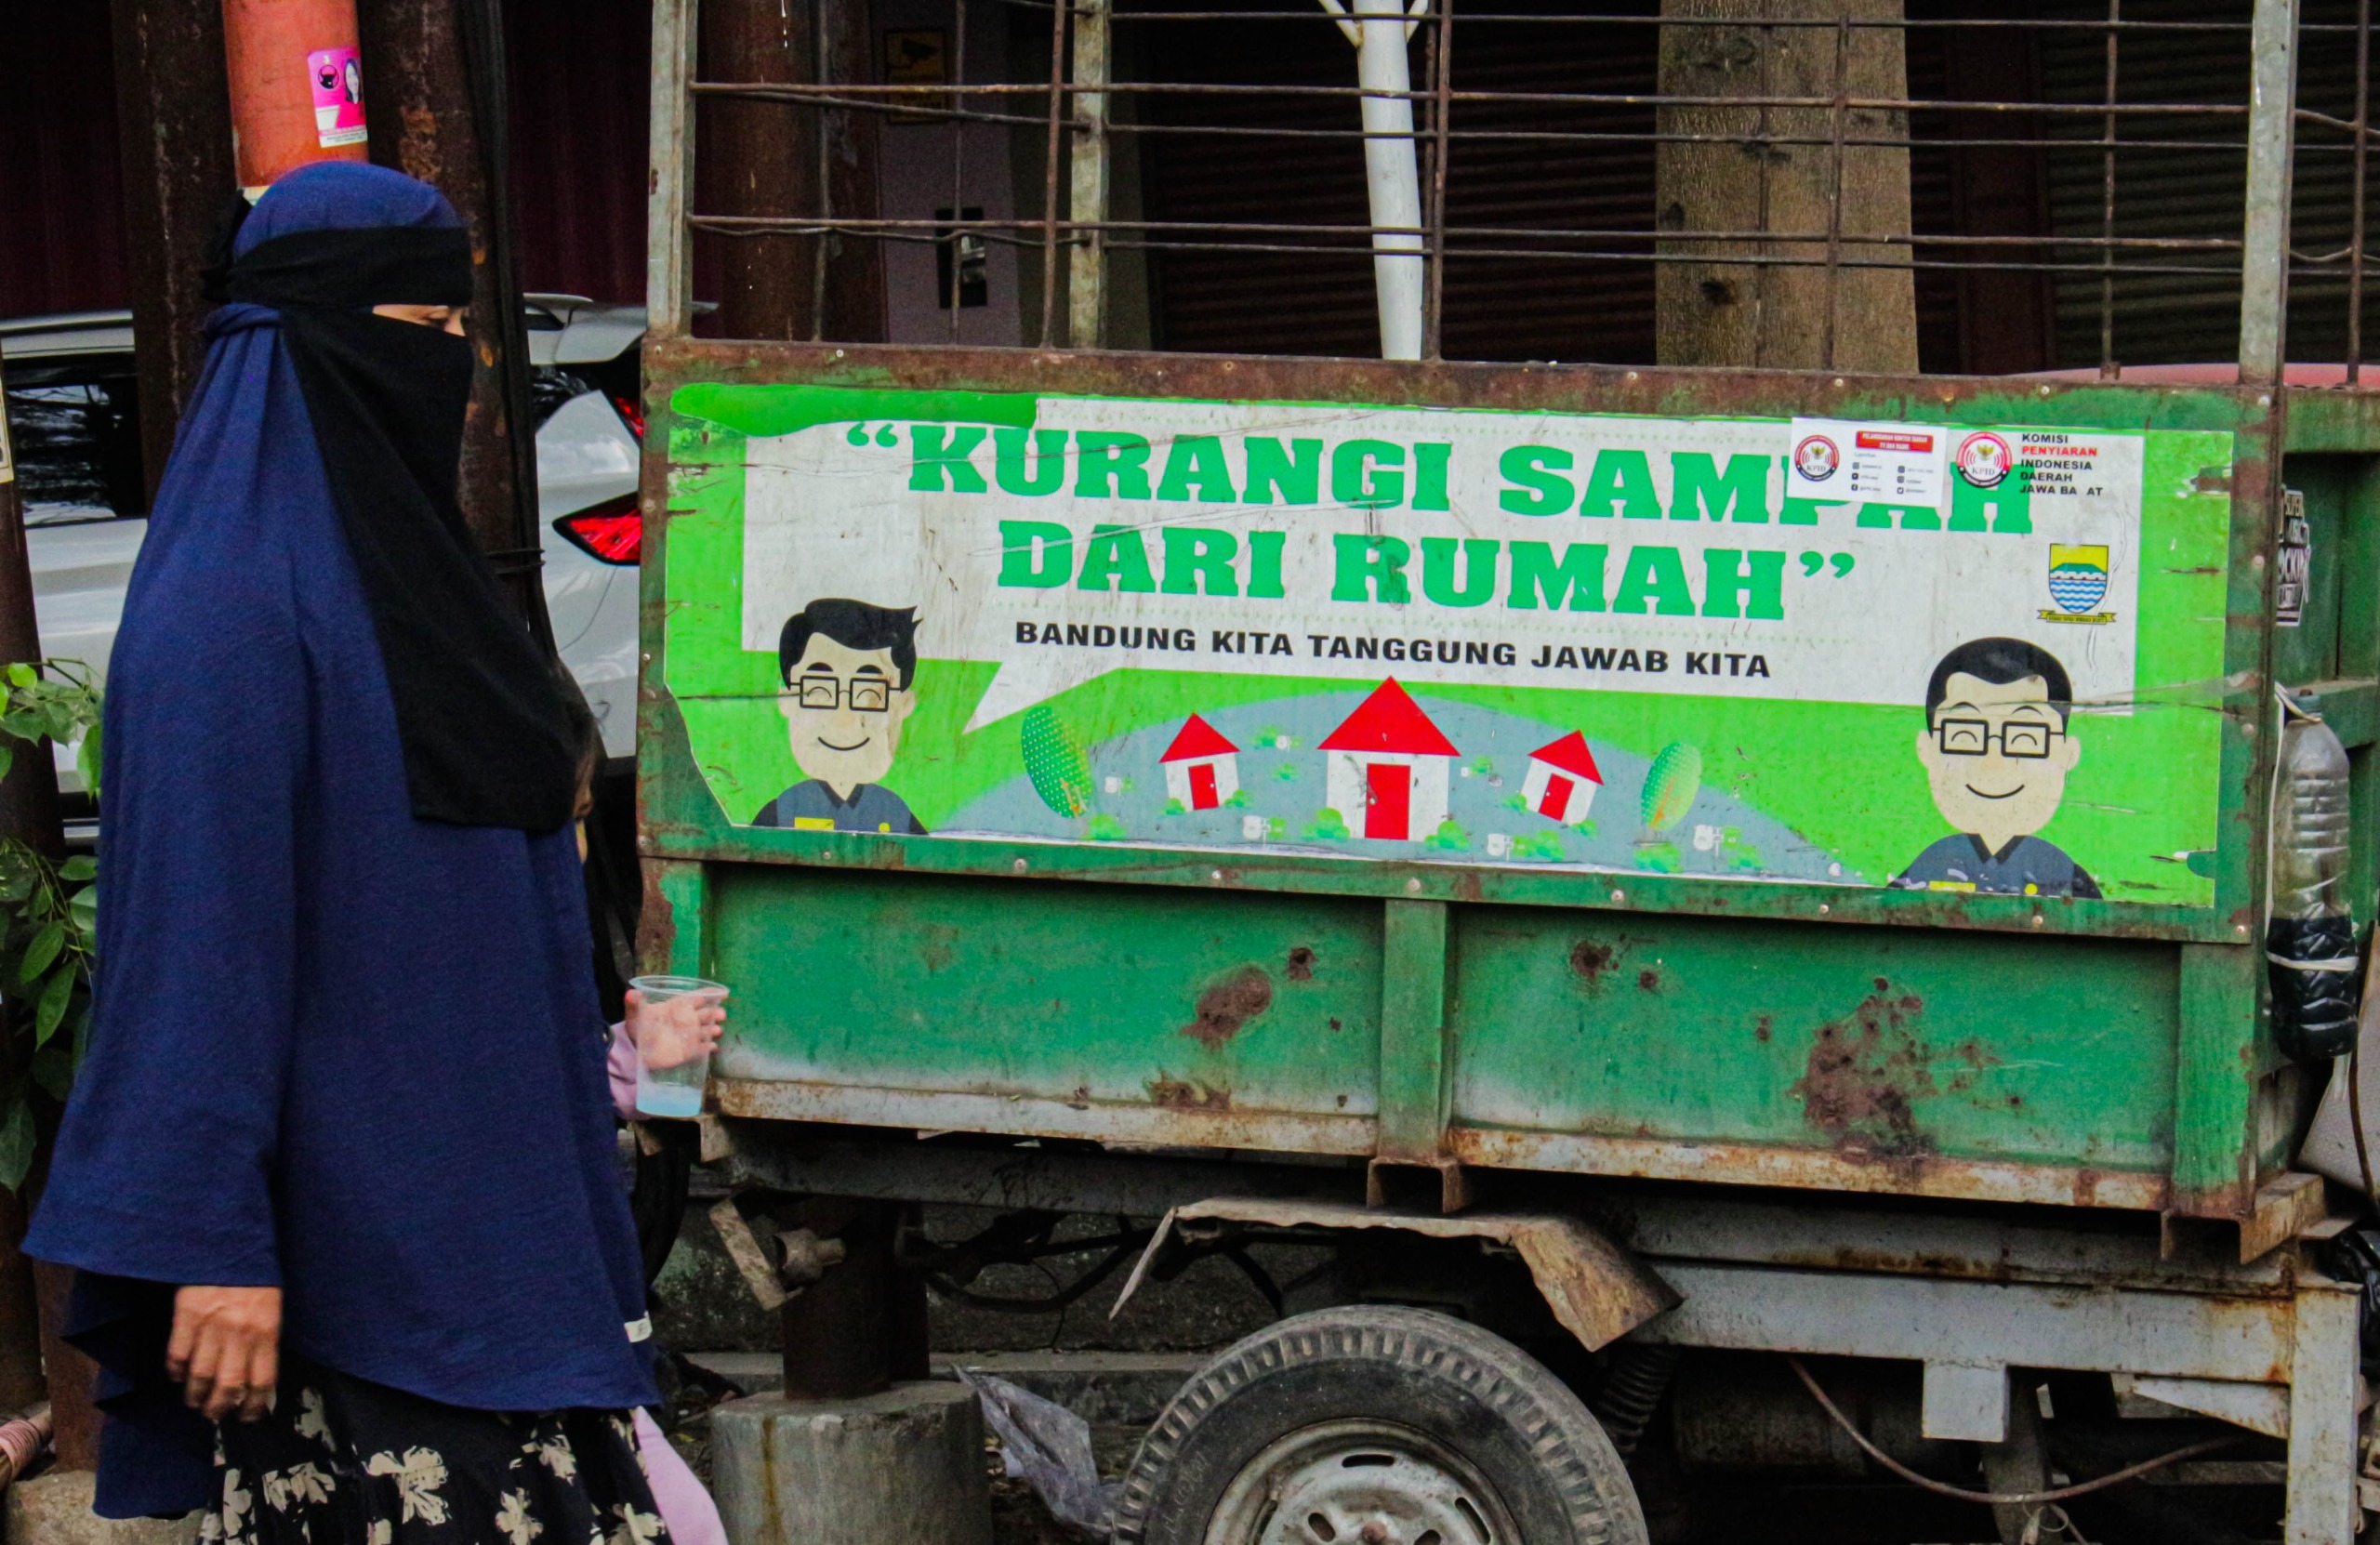 Gerobak sampah yang digunakan untuk mengangkut sampah kecamatan di Kota Bandung.